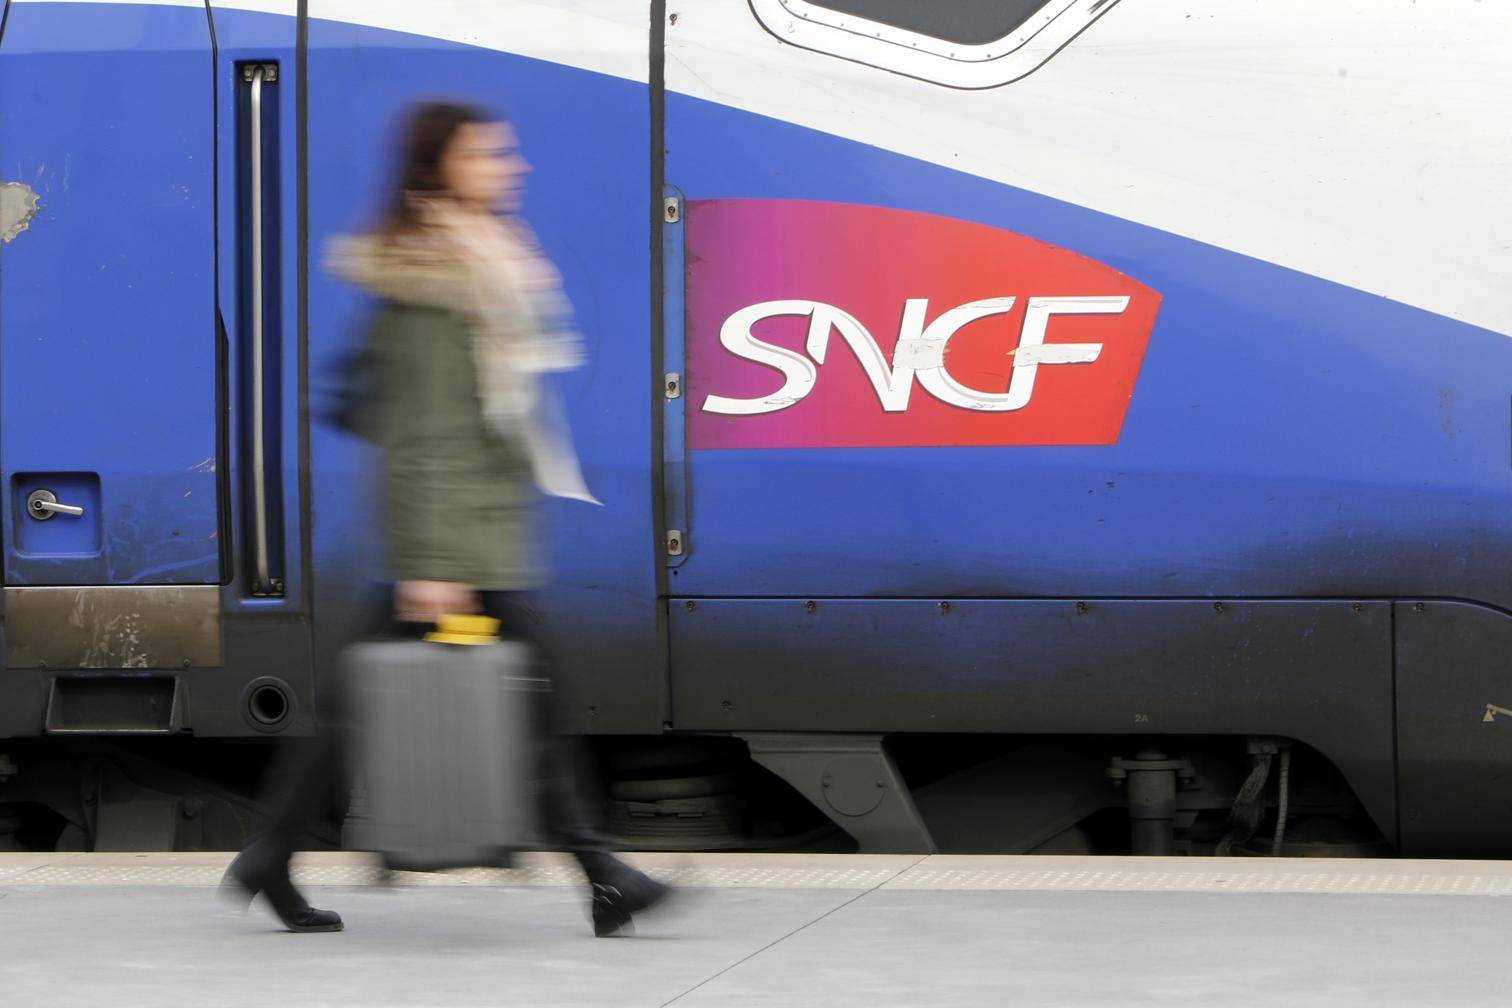 Réforme des retraites : 14% de grévistes à la SNCF à midi, contre 25% mardi dernier